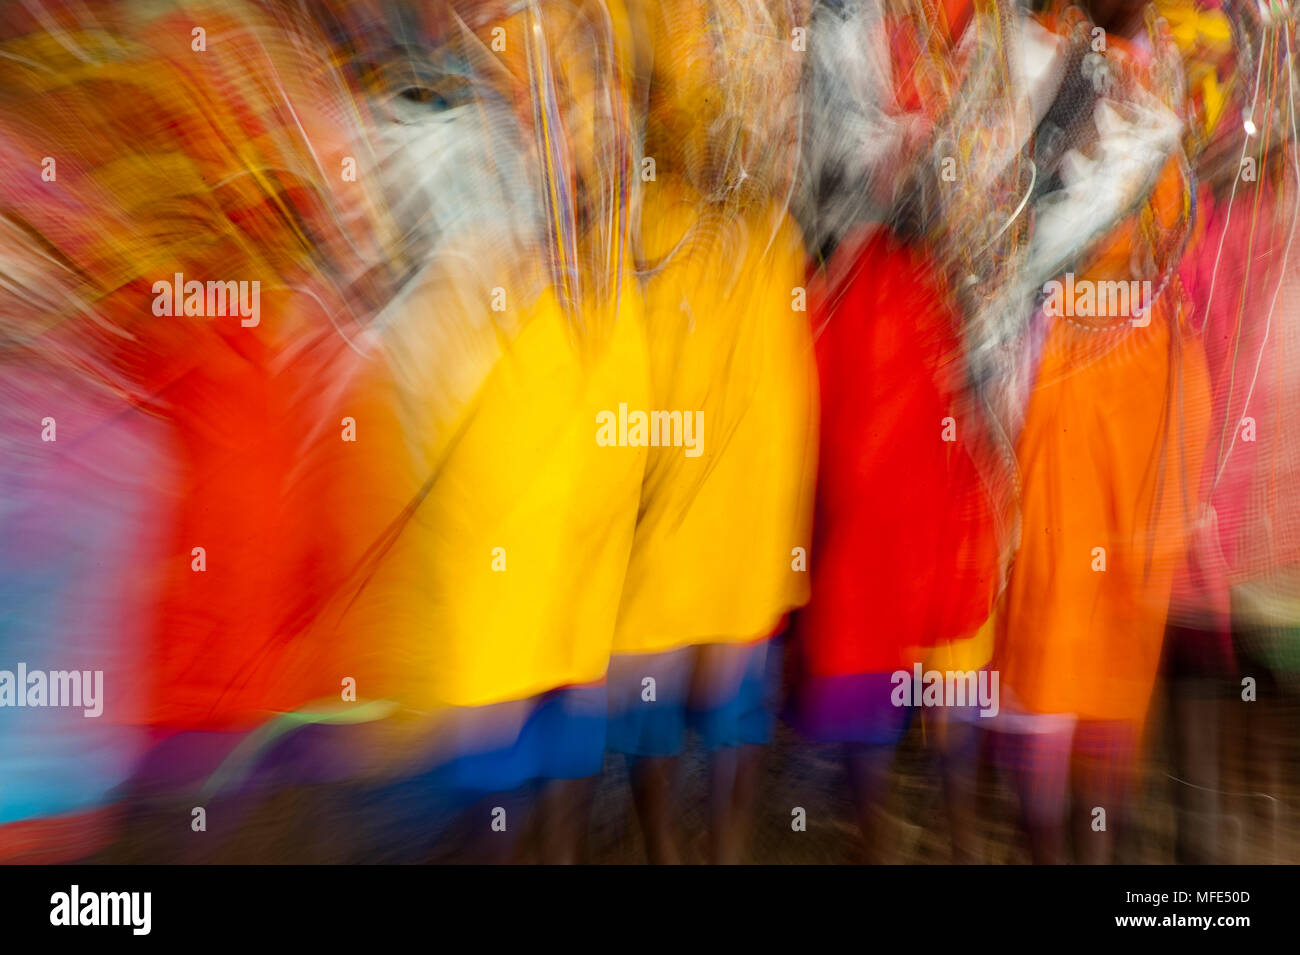 Vitesse d'obturation lente de flou, danse des femmes Masai au Kenya. Banque D'Images